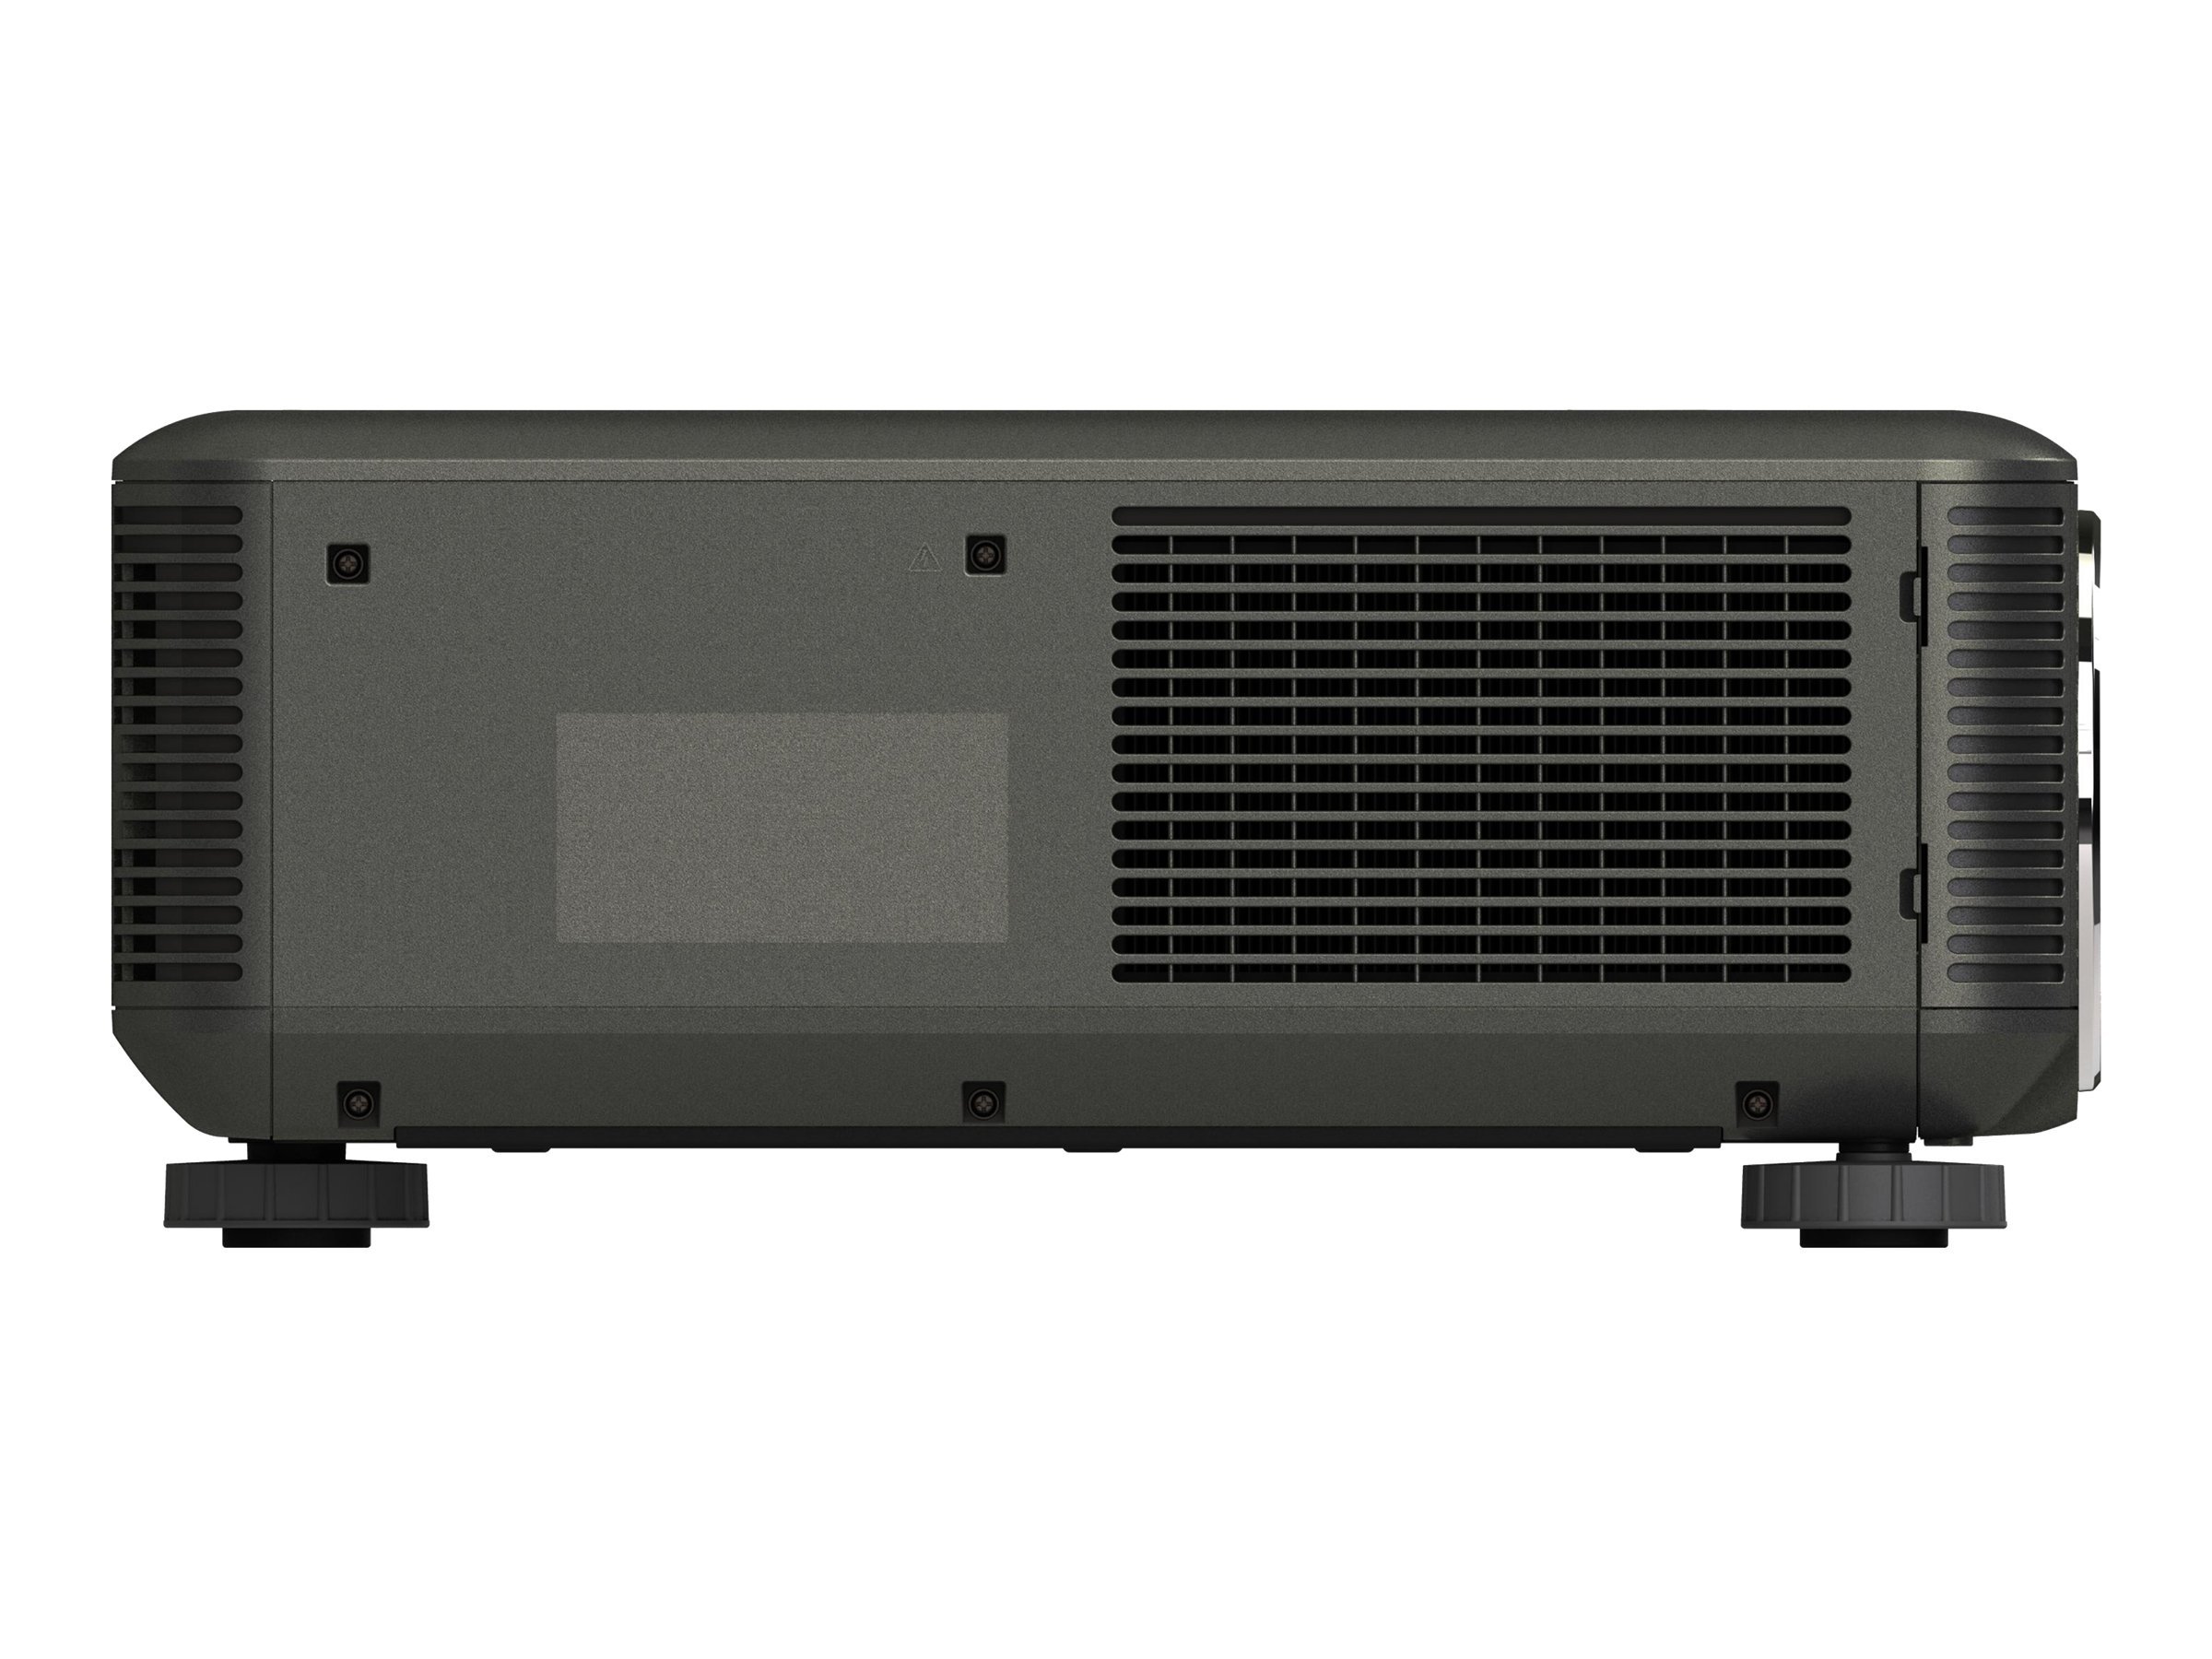 NEC PX700W - Projecteur DLP - 3D - 7000 lumens - WXGA (1280 x 800) - 16:10 - 720p - aucune lentille - 60003183 - Projecteurs numériques